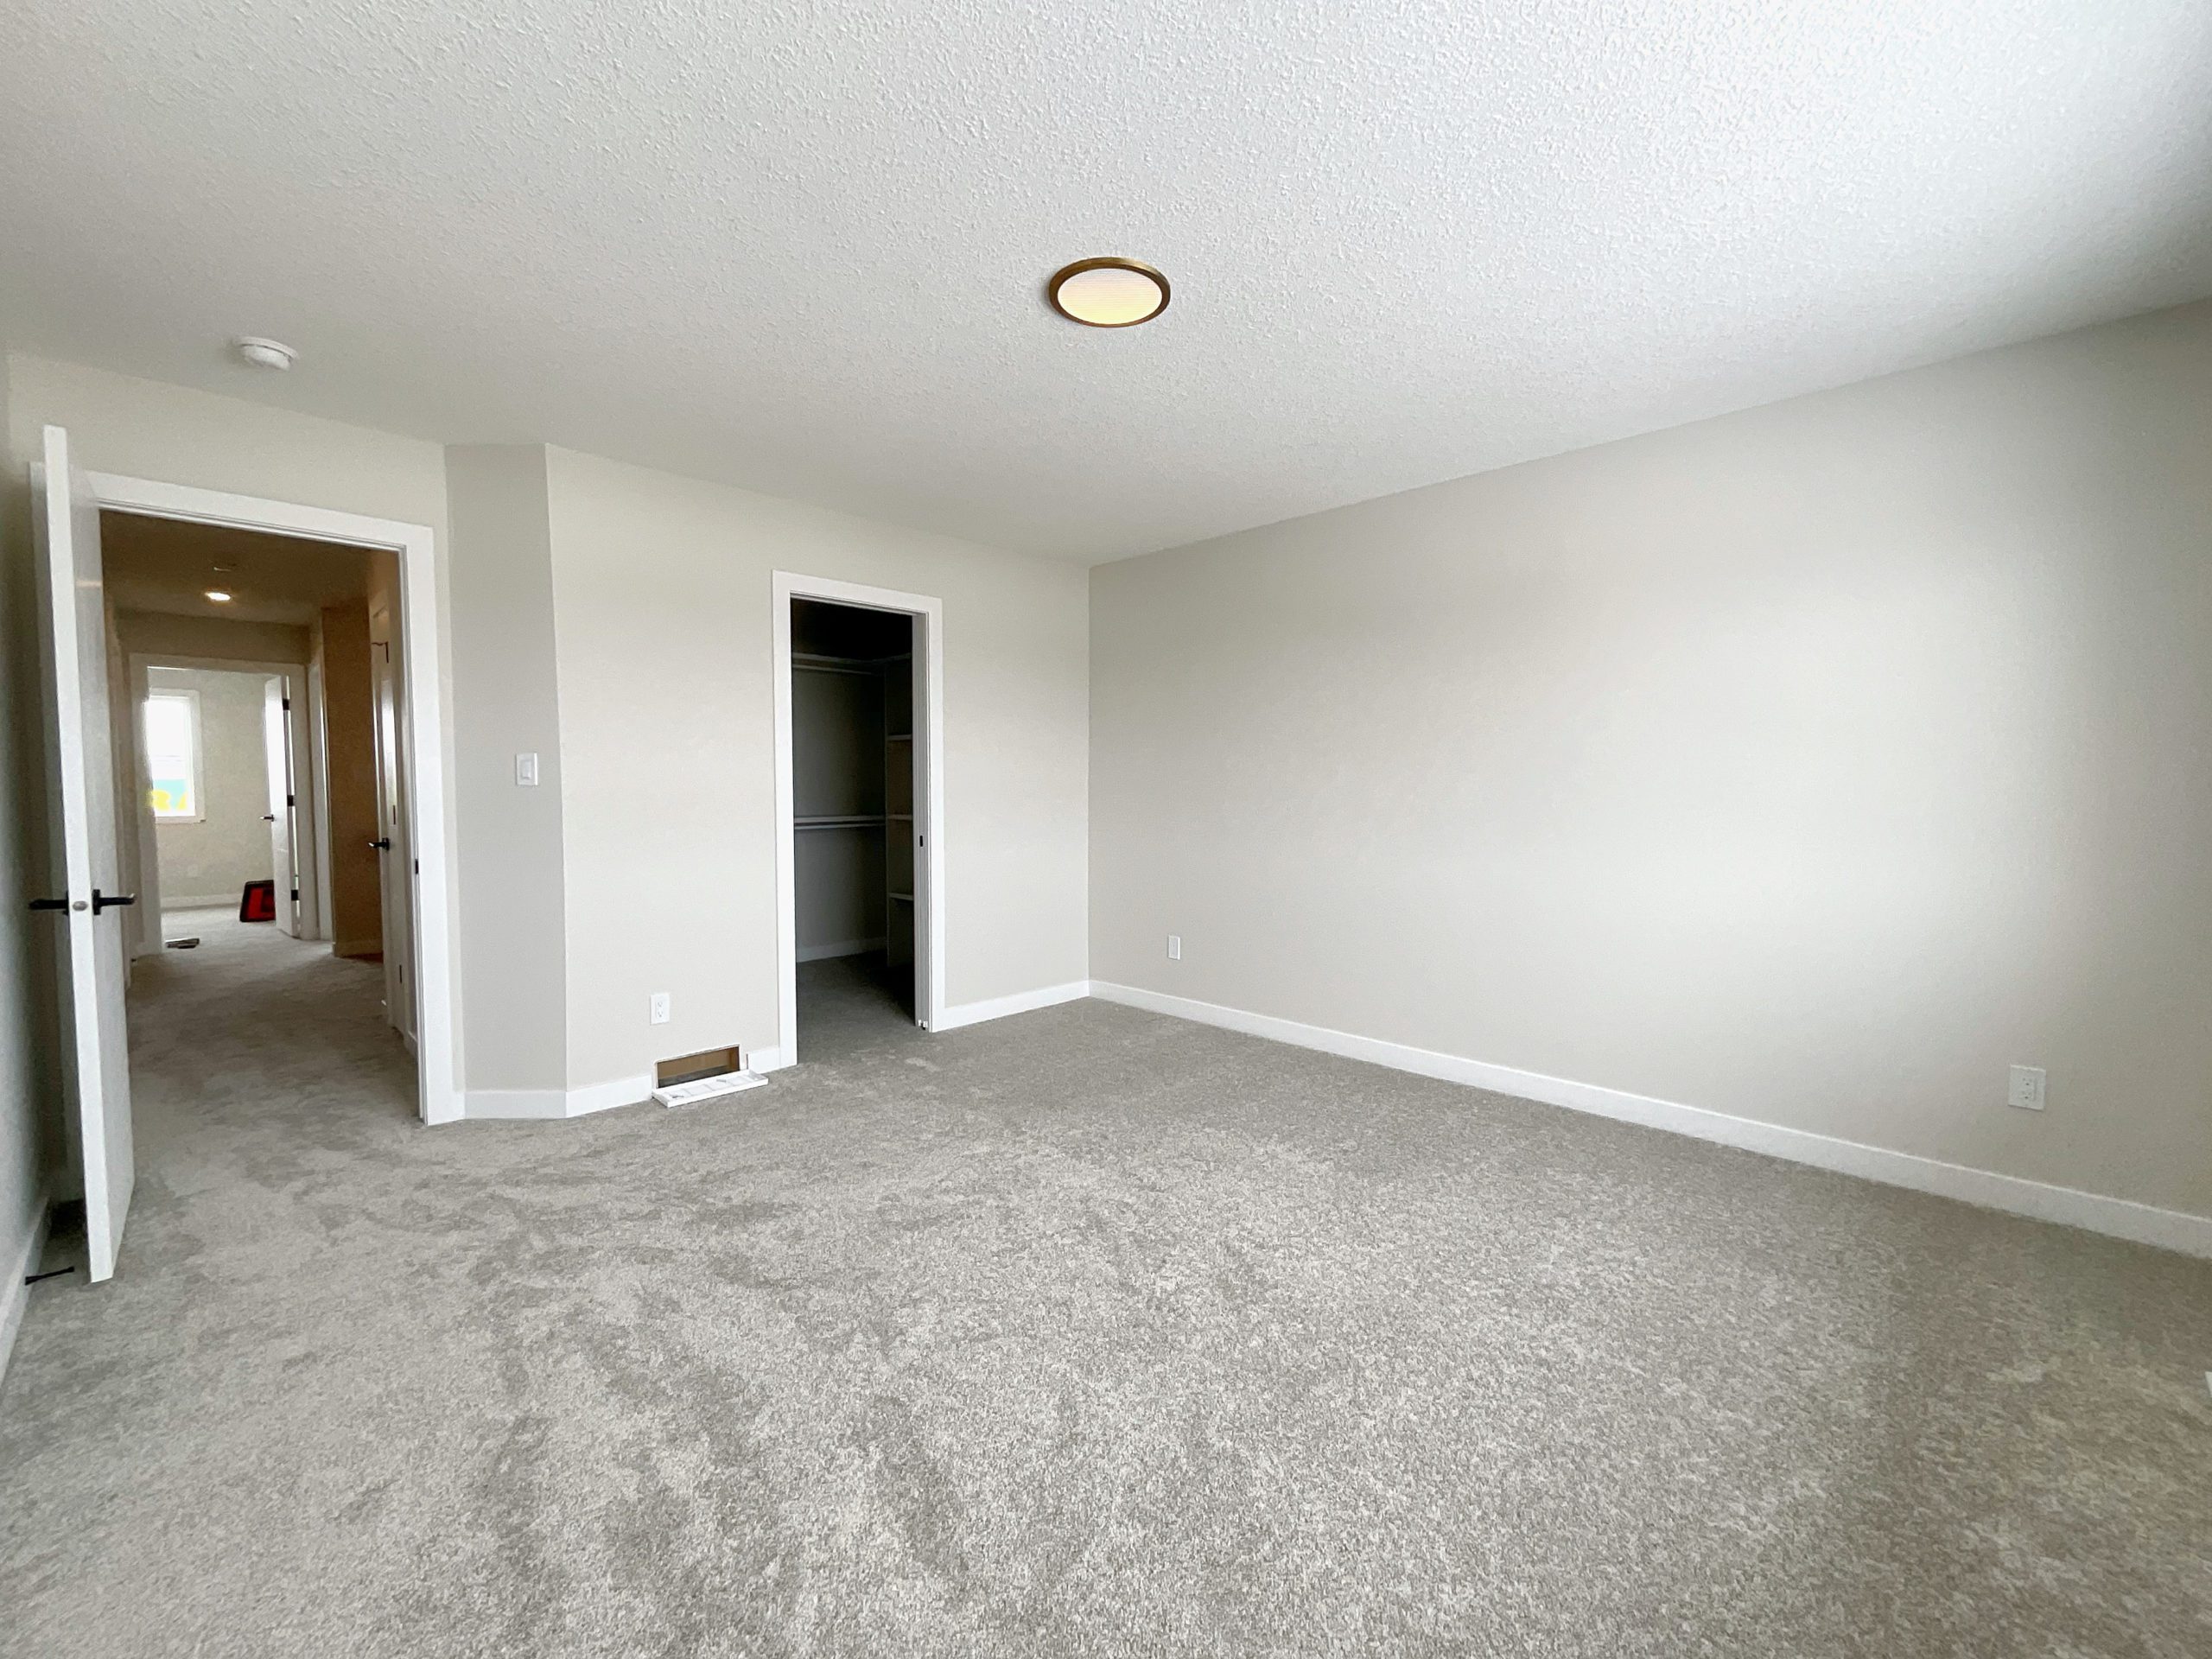 Show an empty primary bedroom with door to walk-in closet and door to hallway.